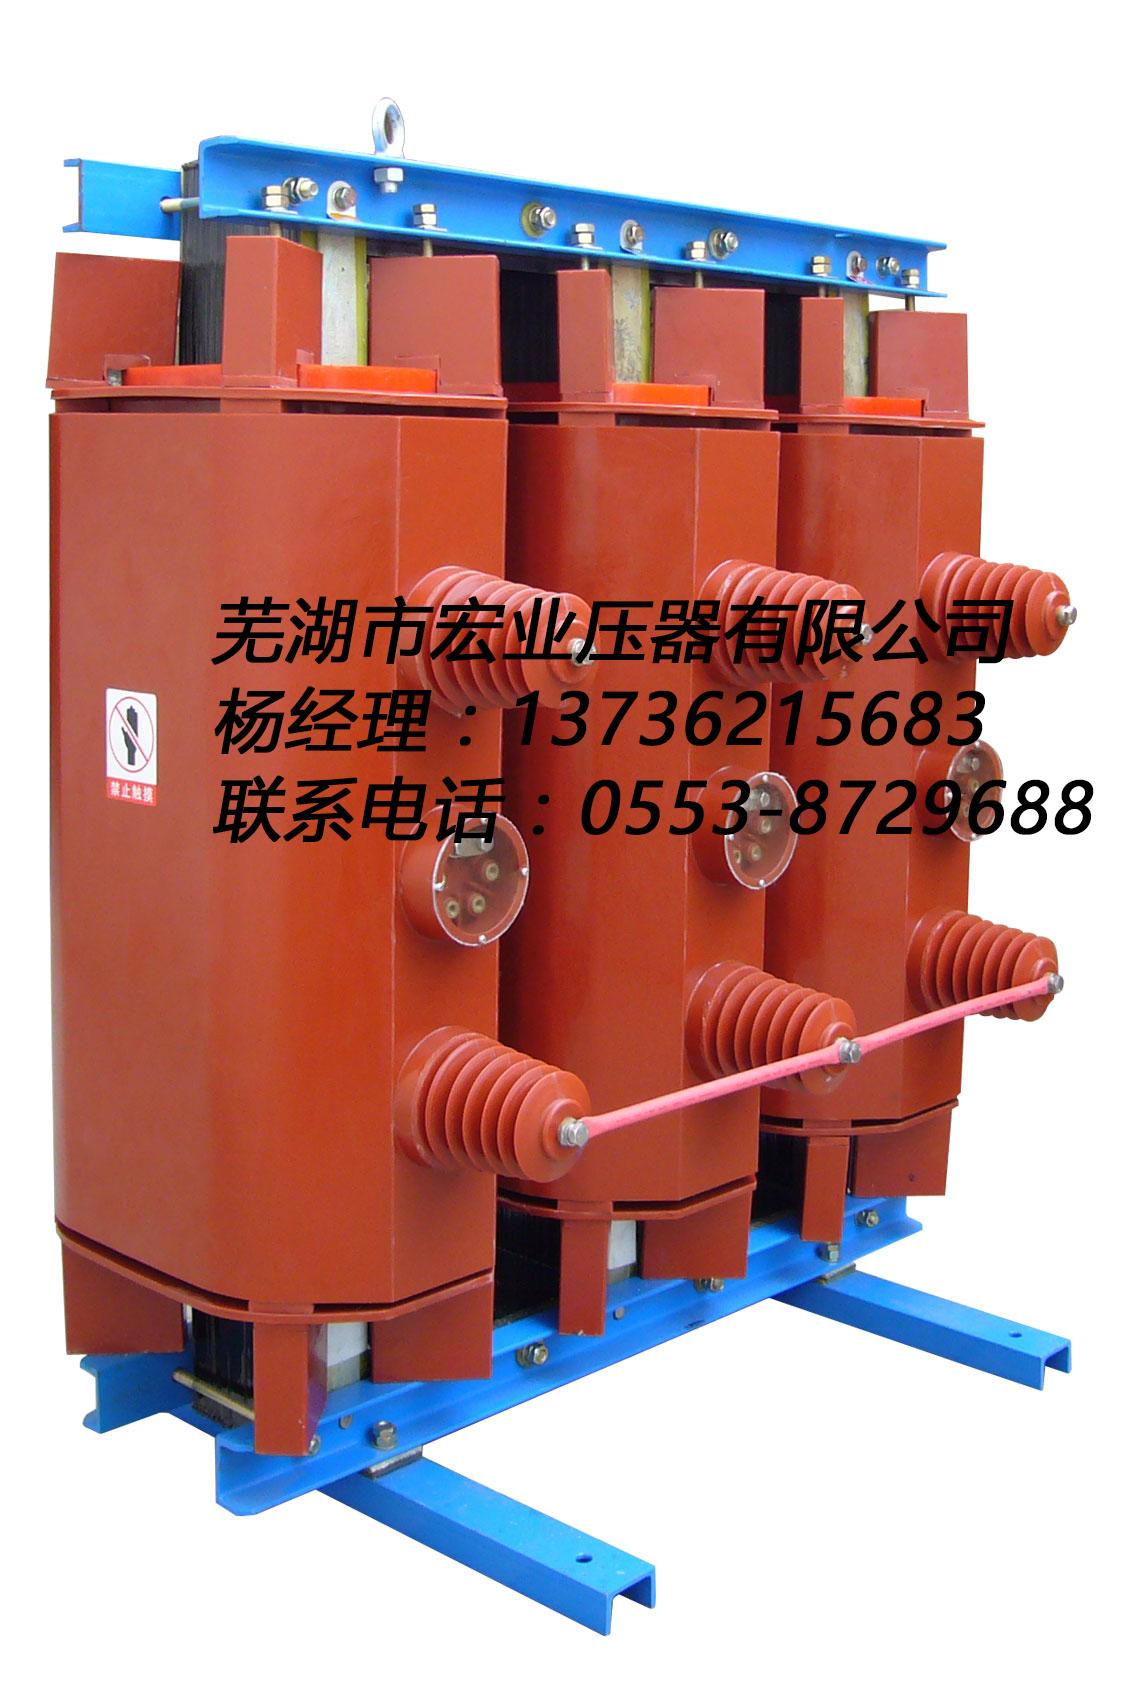 生产KSG-630/10-0.4矿用变压器宏业变压器